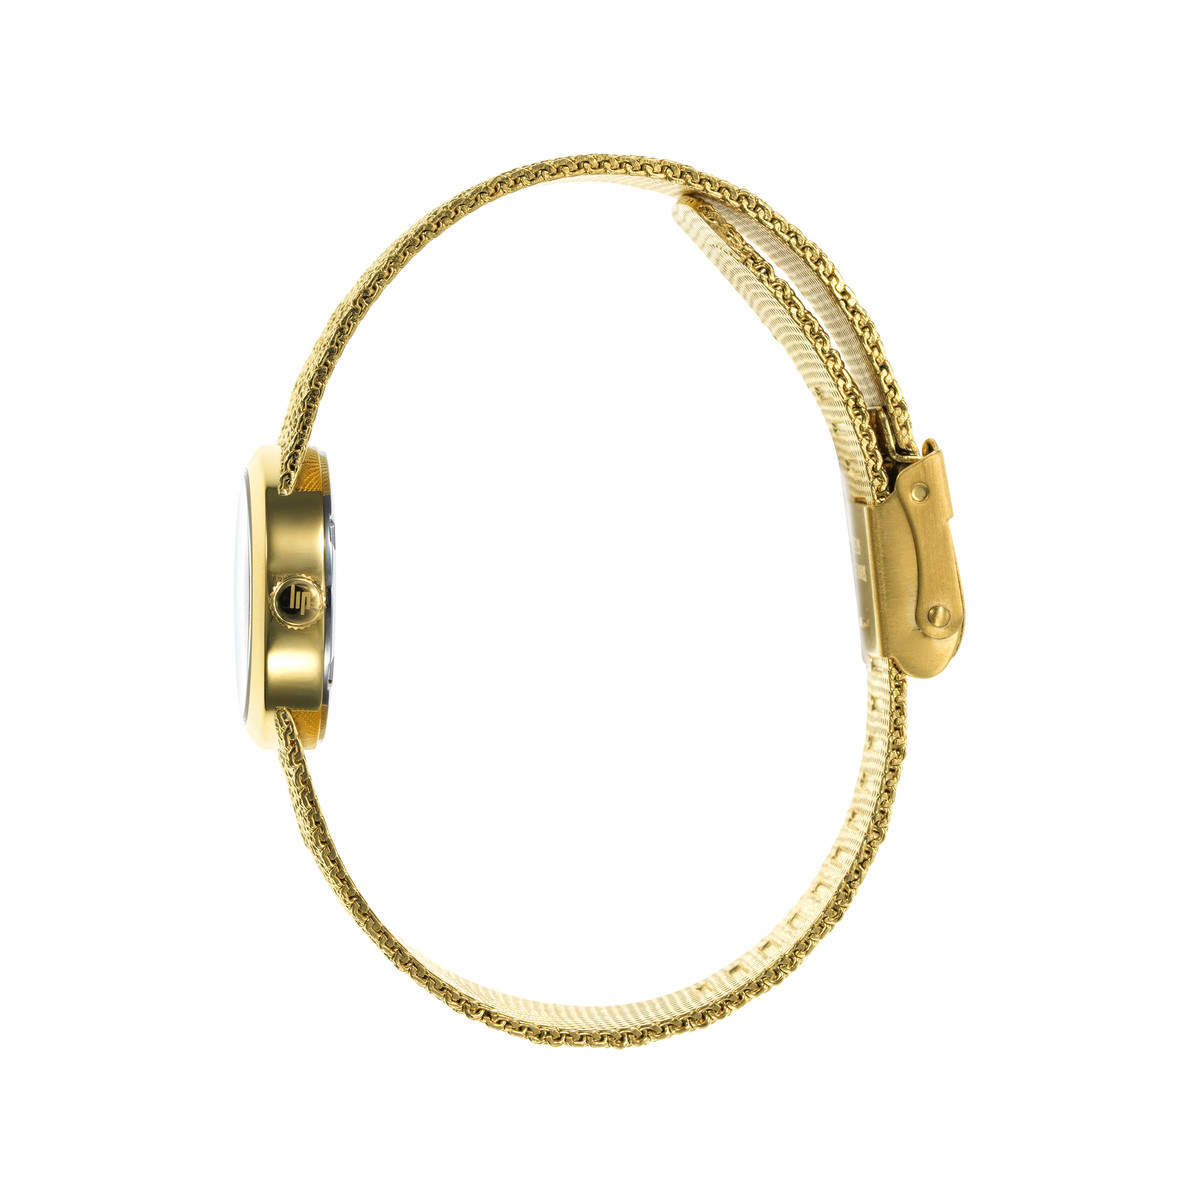 Montre LIP femme bracelet métal doré - vue 2